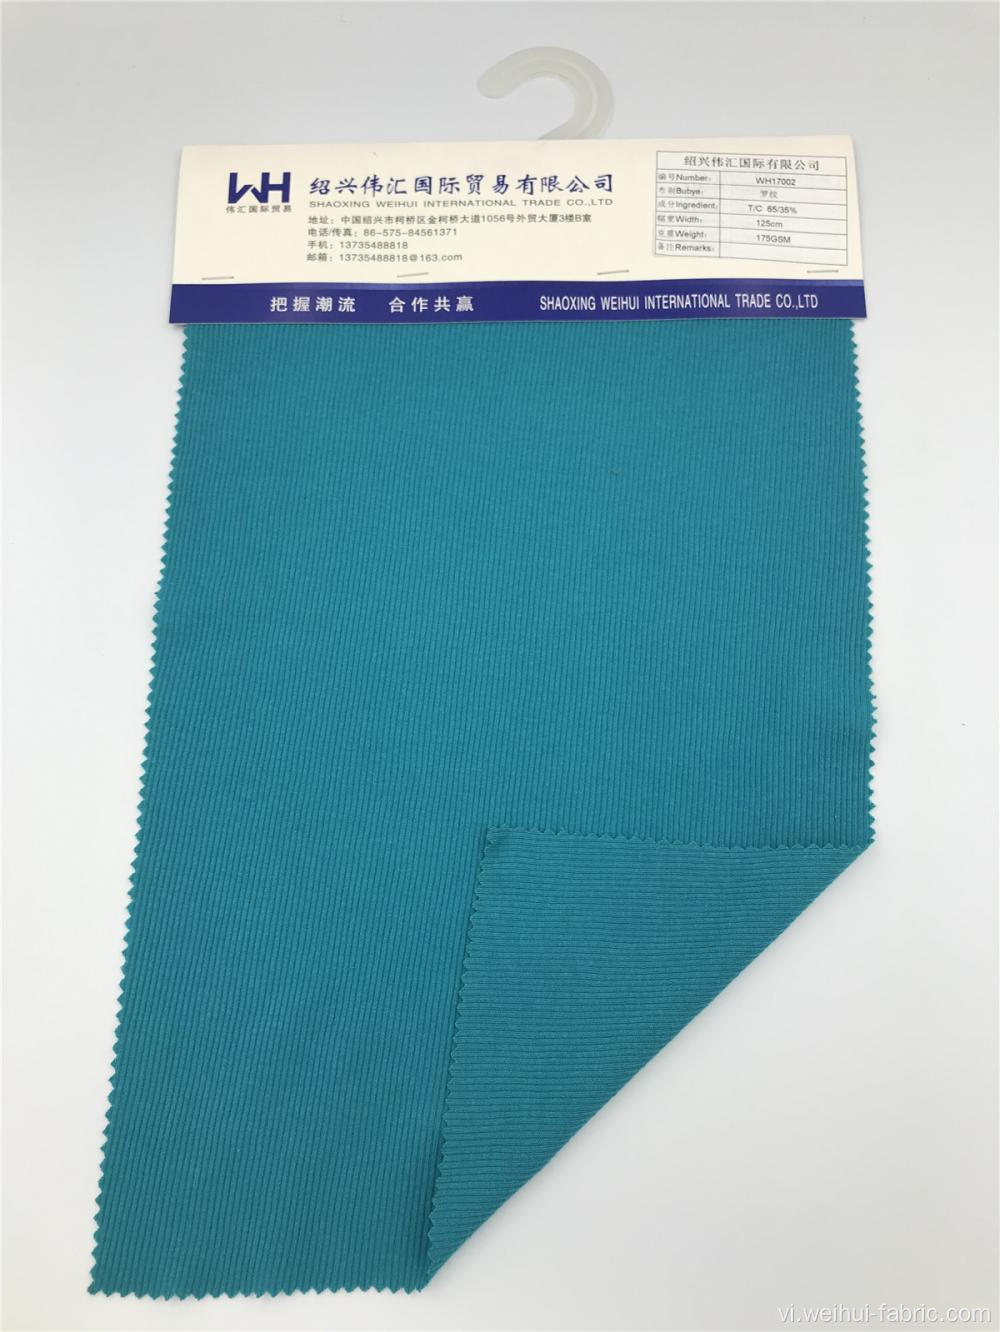 Trọng lượng chất lượng cao 175GSM T / C Vải màu xanh lam